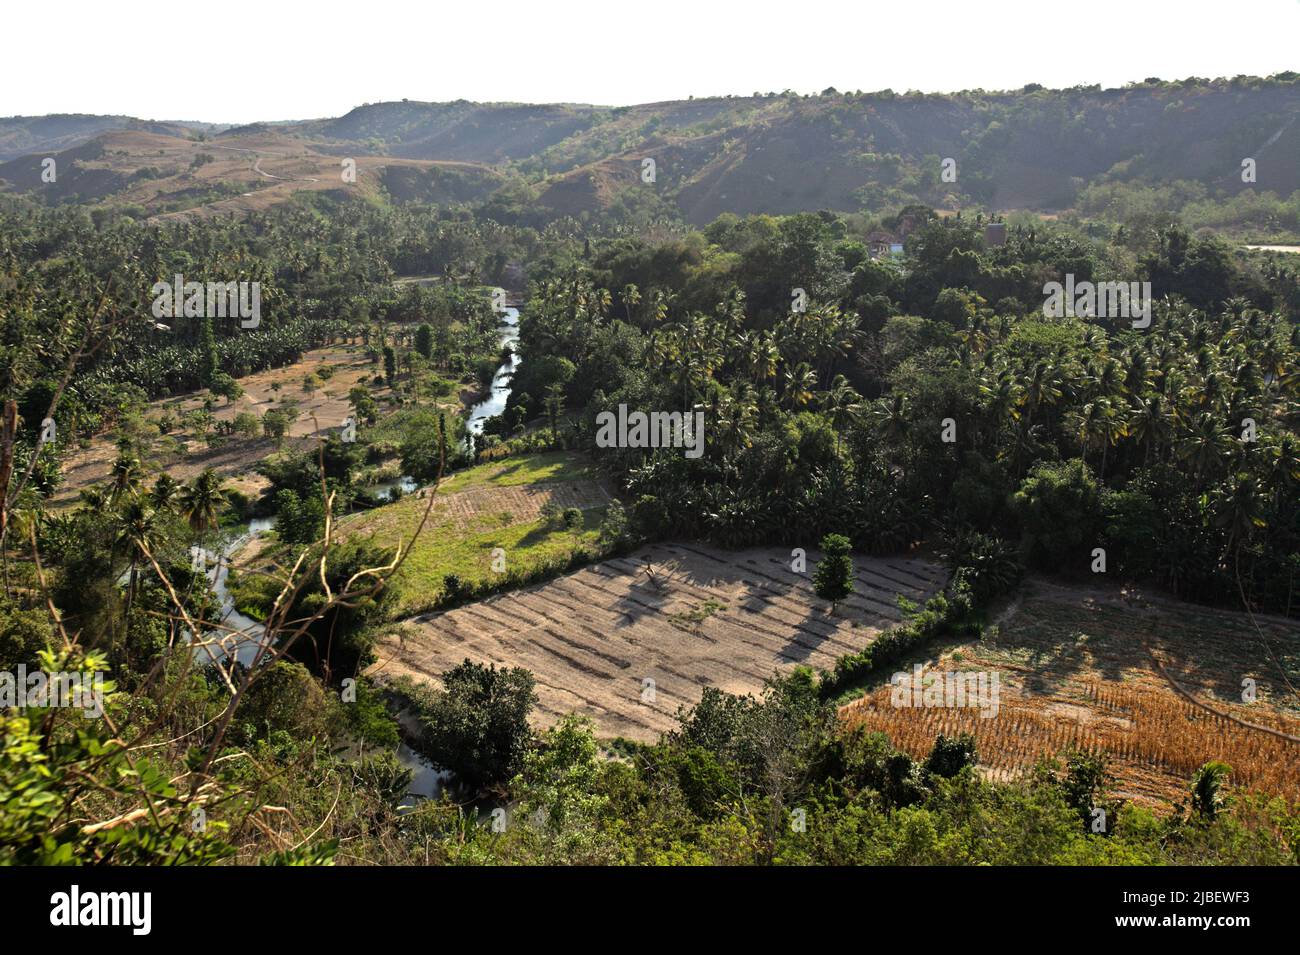 Paysage d'une vallée verte traversée par une rivière à Praiyawang, Rindi, Sumba est, Nusa Tenggara est, Indonésie. Banque D'Images